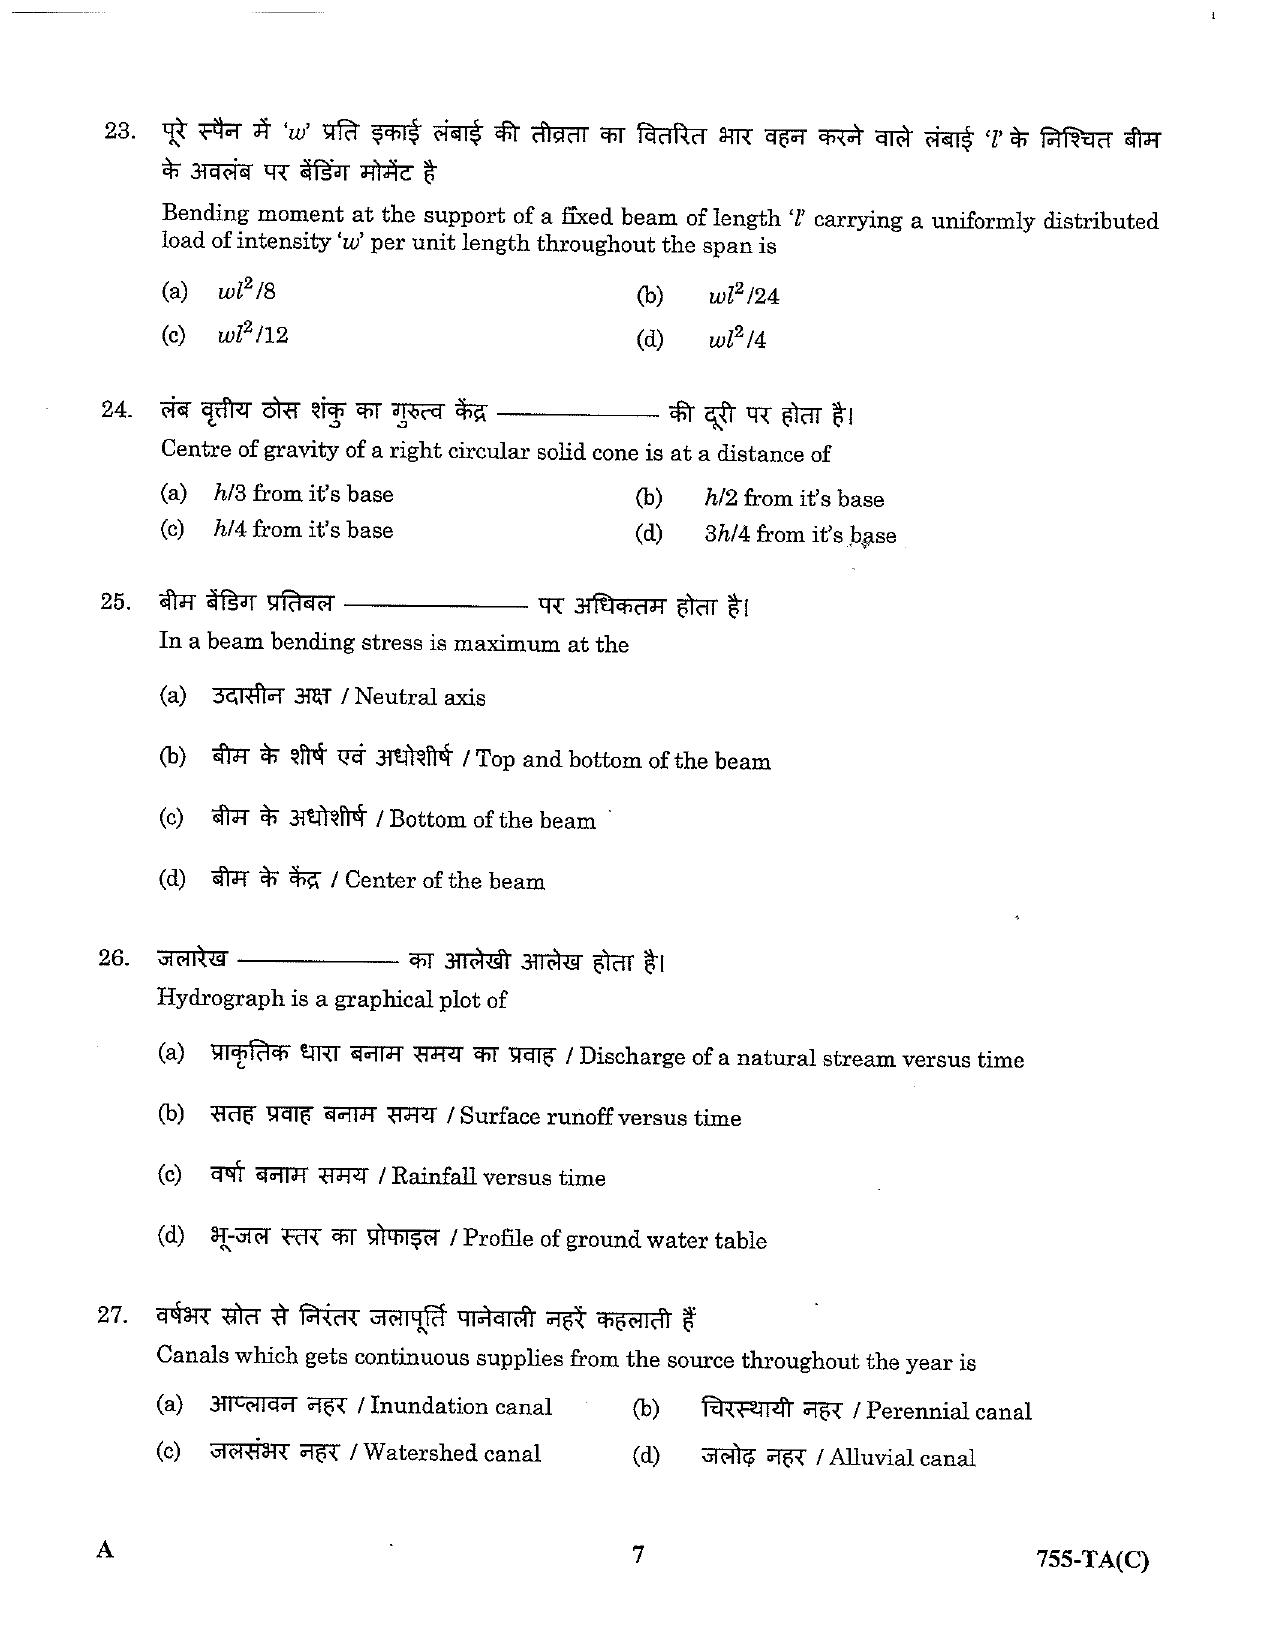 LPSC Technical Assistant (Civil) 2023 Question Paper - Page 7